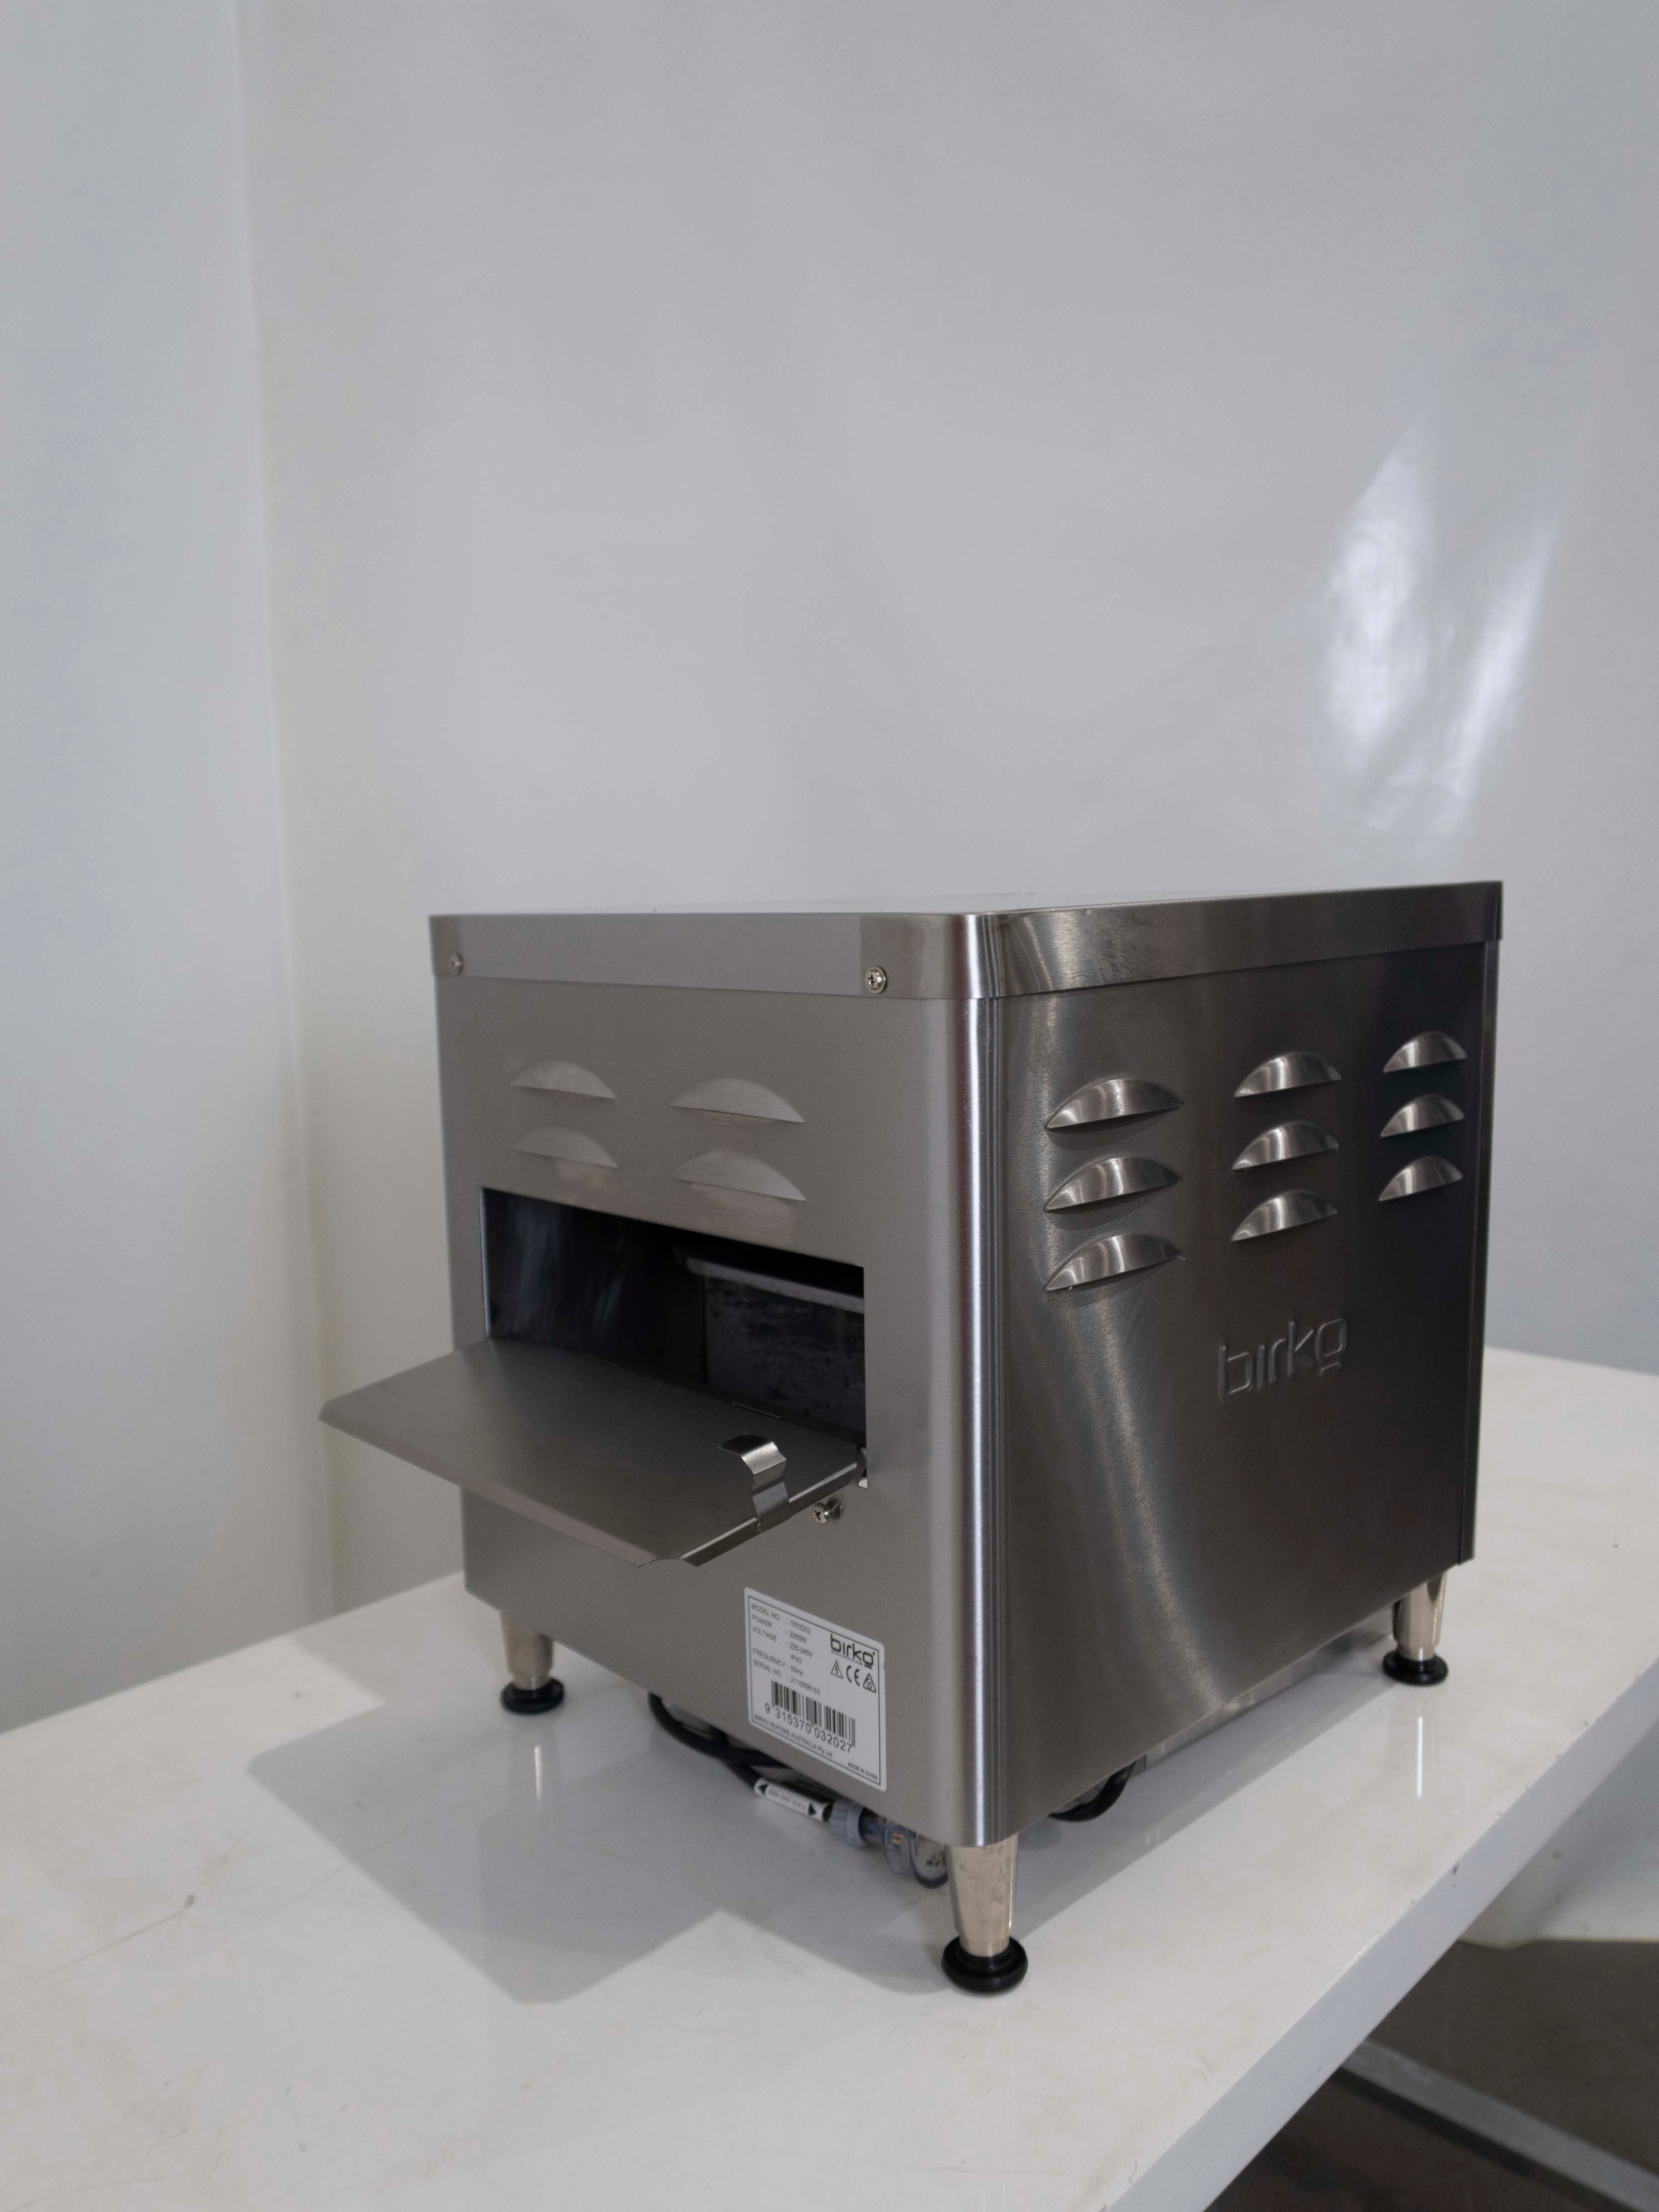 Thumbnail - Birko 1003202 Conveyor Toaster